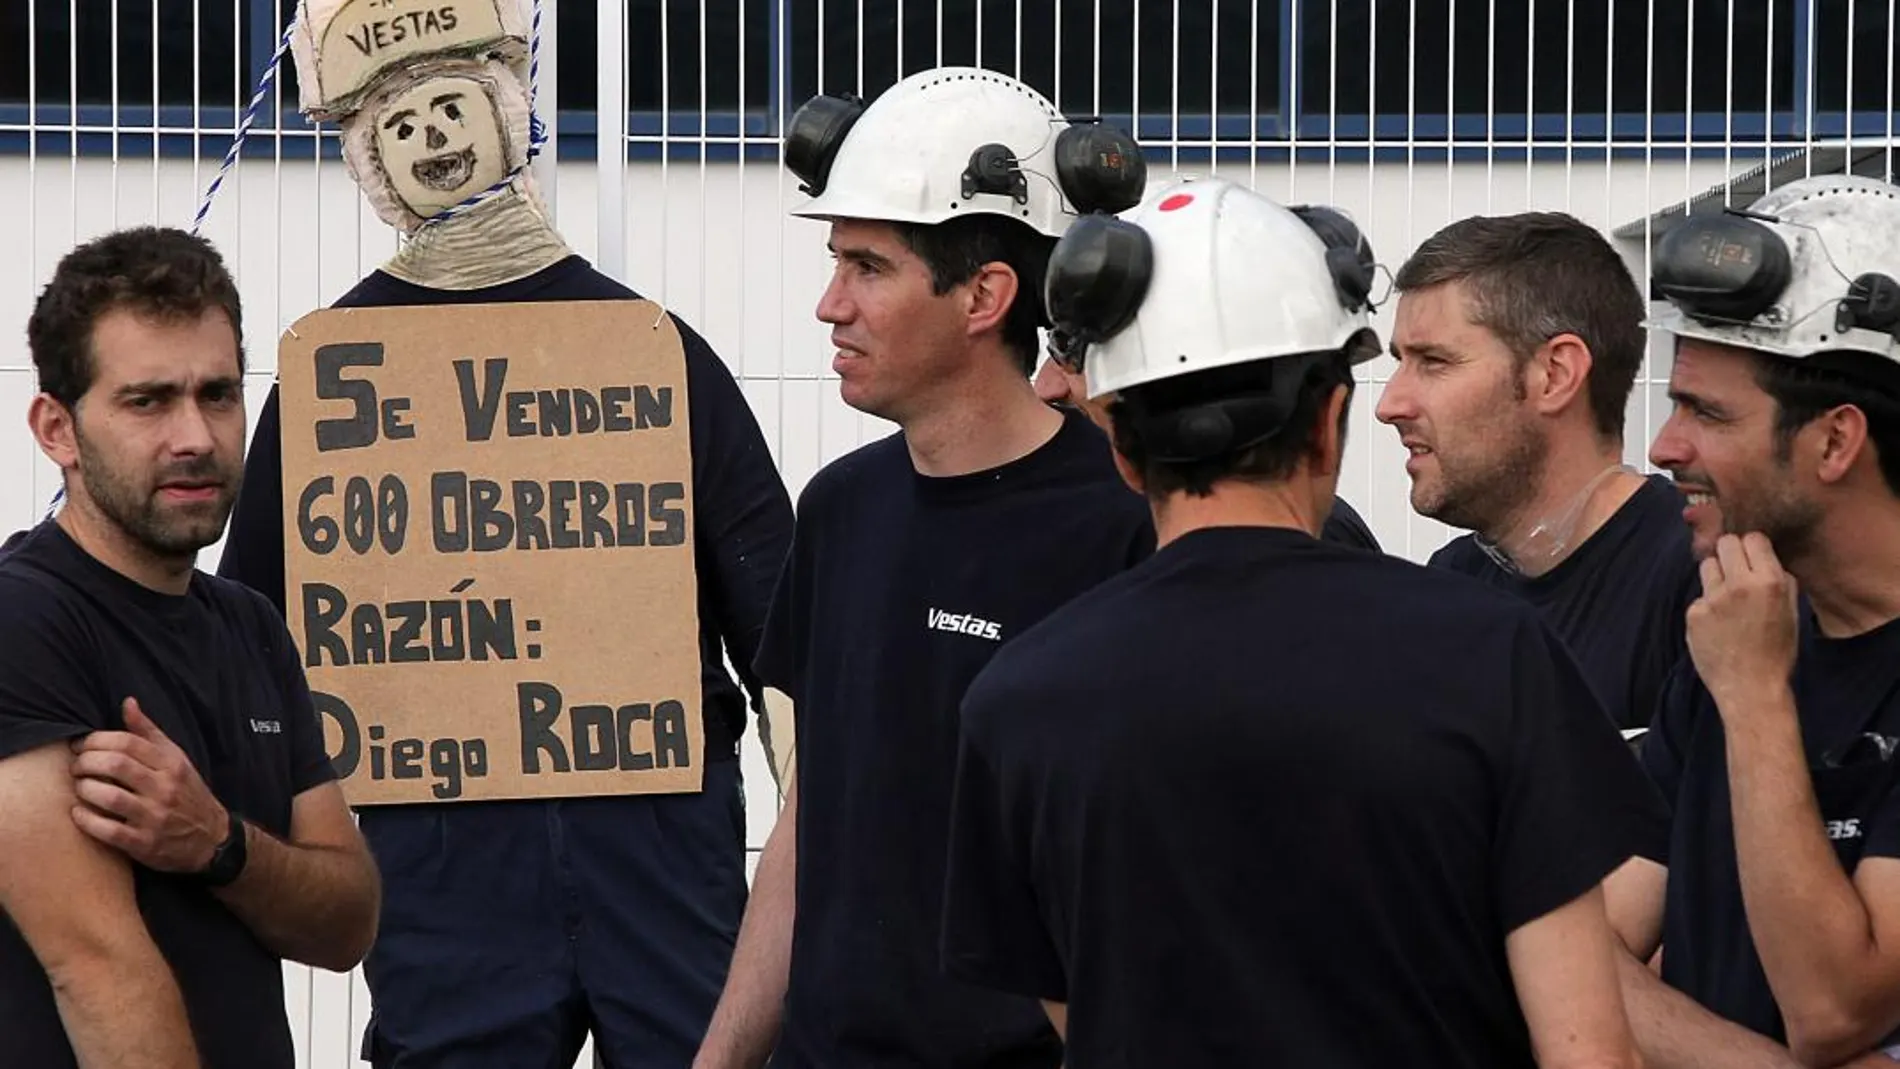 Última manifestación de los trabajadores de Vestas